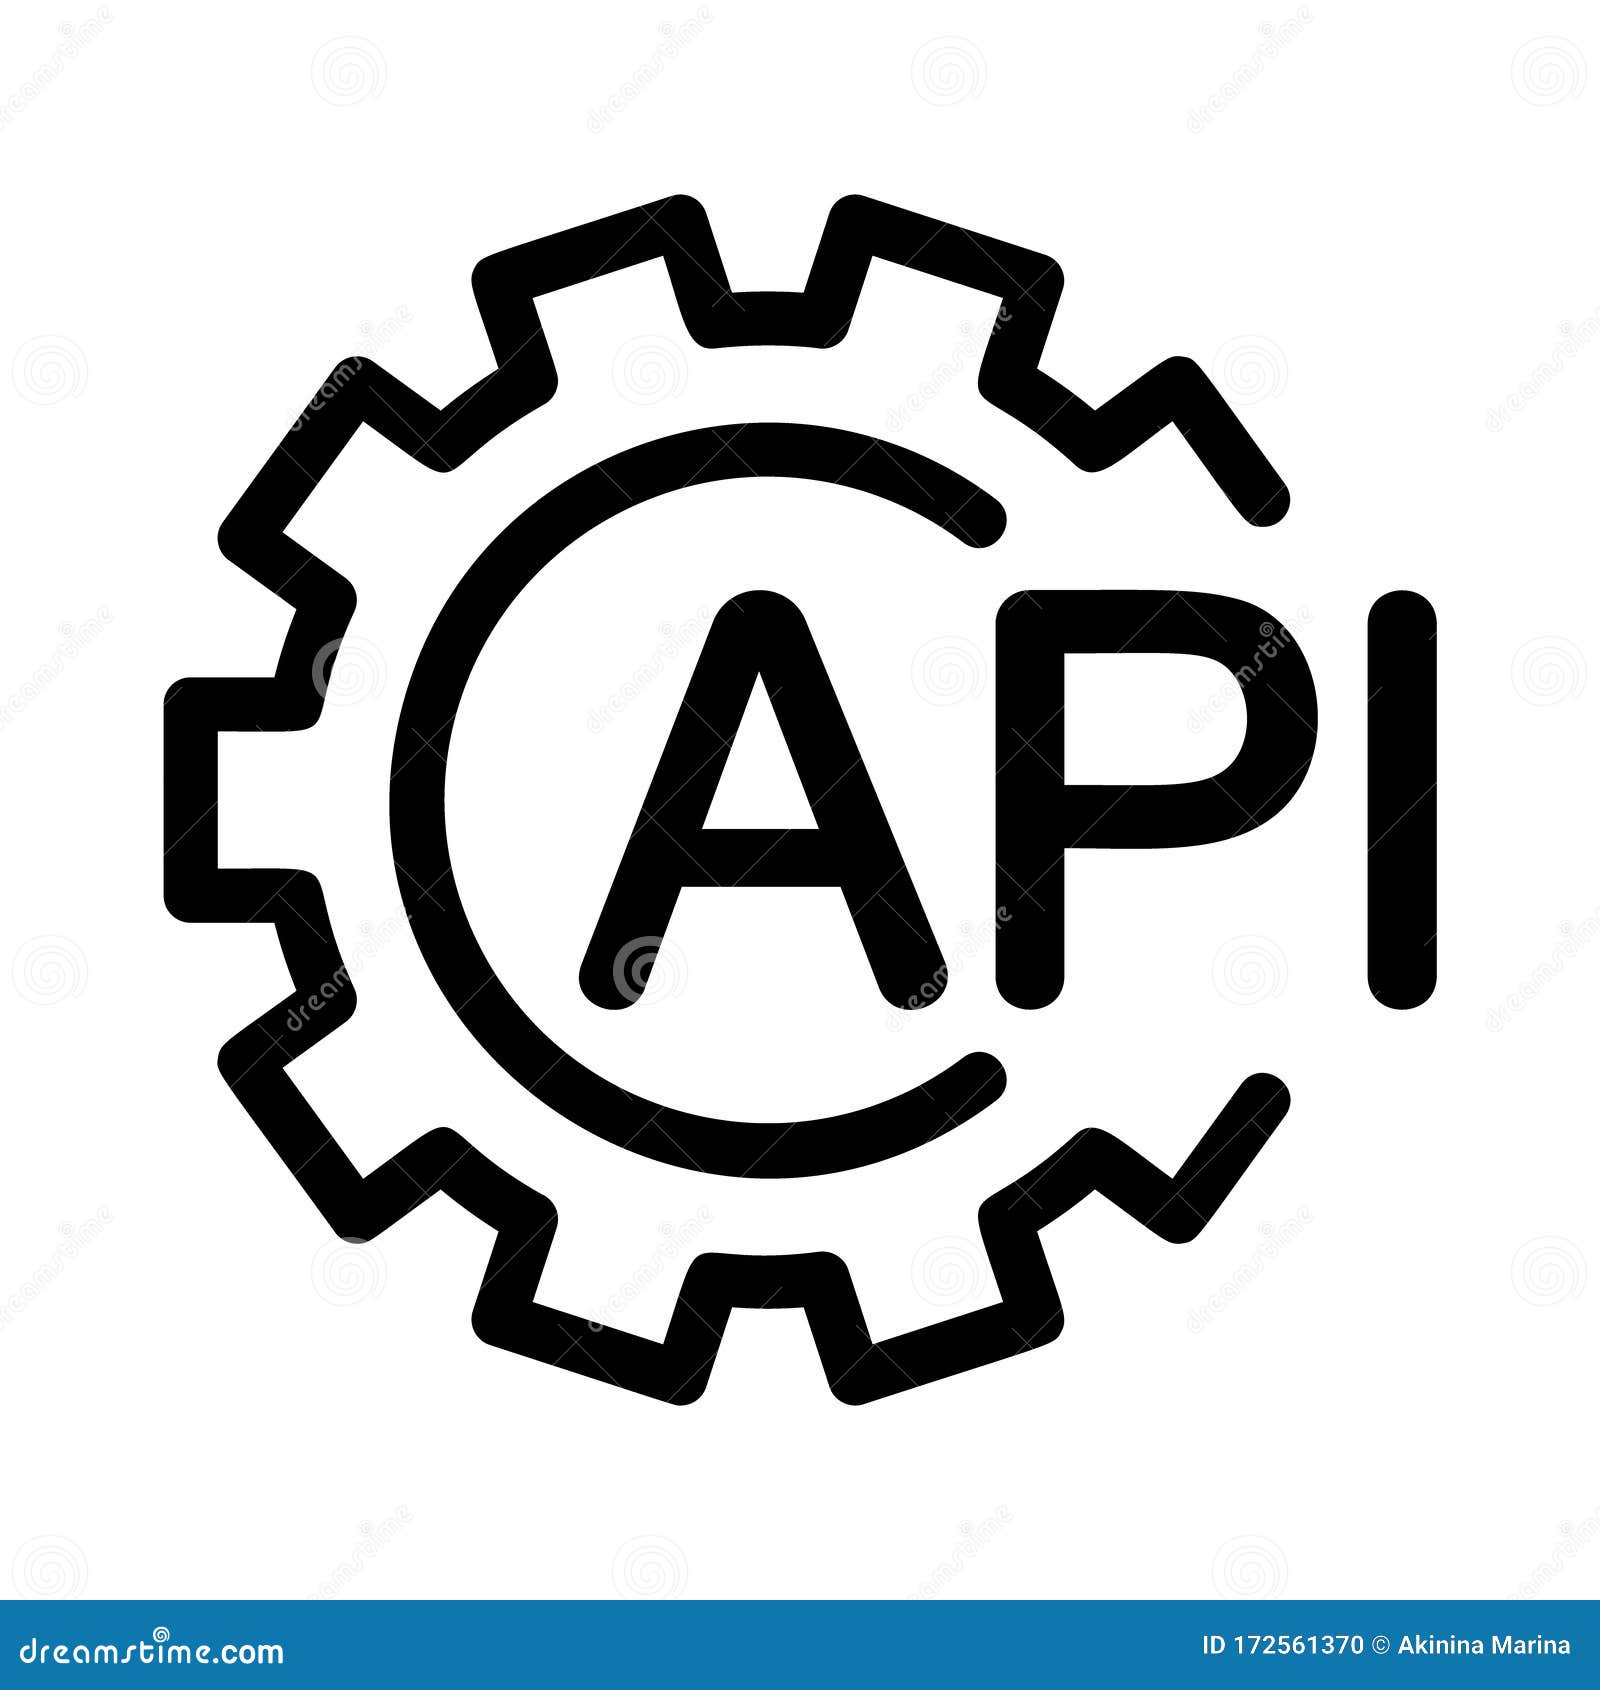 Logo lồng API tuyệt đẹp sẽ làm say lòng tất cả những người đam mê thiết kế và truyền thông. Cùng khám phá những ưu điểm của mẫu logo lồng API này và trải nghiệm sự tuyệt vời của thiết kế hiện đại nhé.